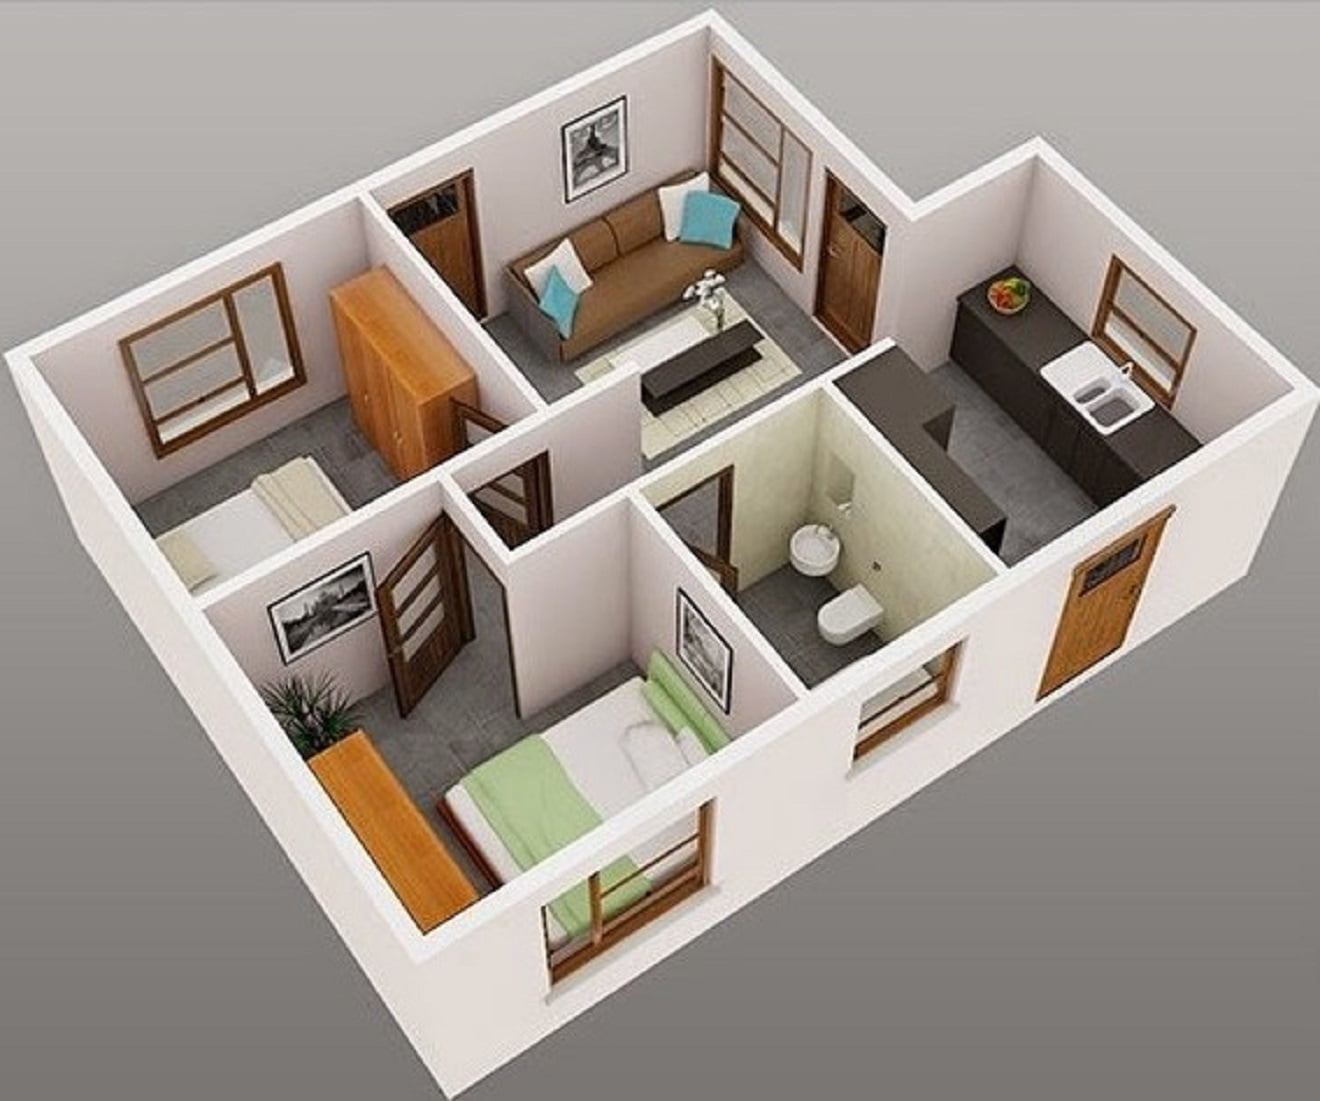 52 Contoh Desain Model Rumah Minimalis 2 Kamar Sederhana Paling Banyak di Minati